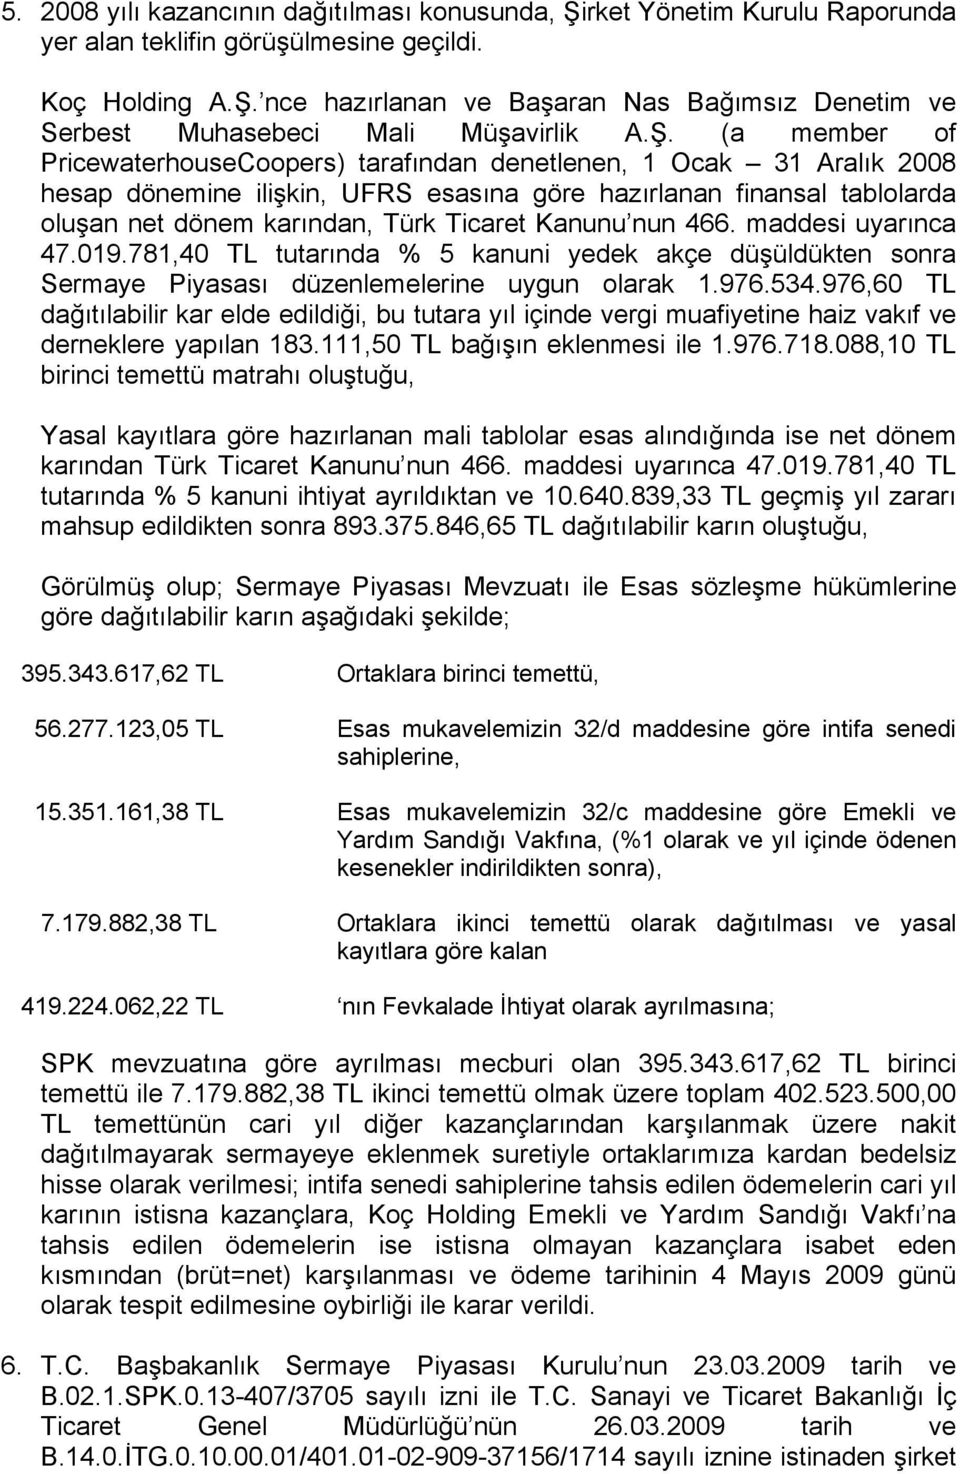 Kanunu nun 466. maddesi uyarınca 47.019.781,40 TL tutarında % 5 kanuni yedek akçe düşüldükten sonra Sermaye Piyasası düzenlemelerine uygun olarak 1.976.534.